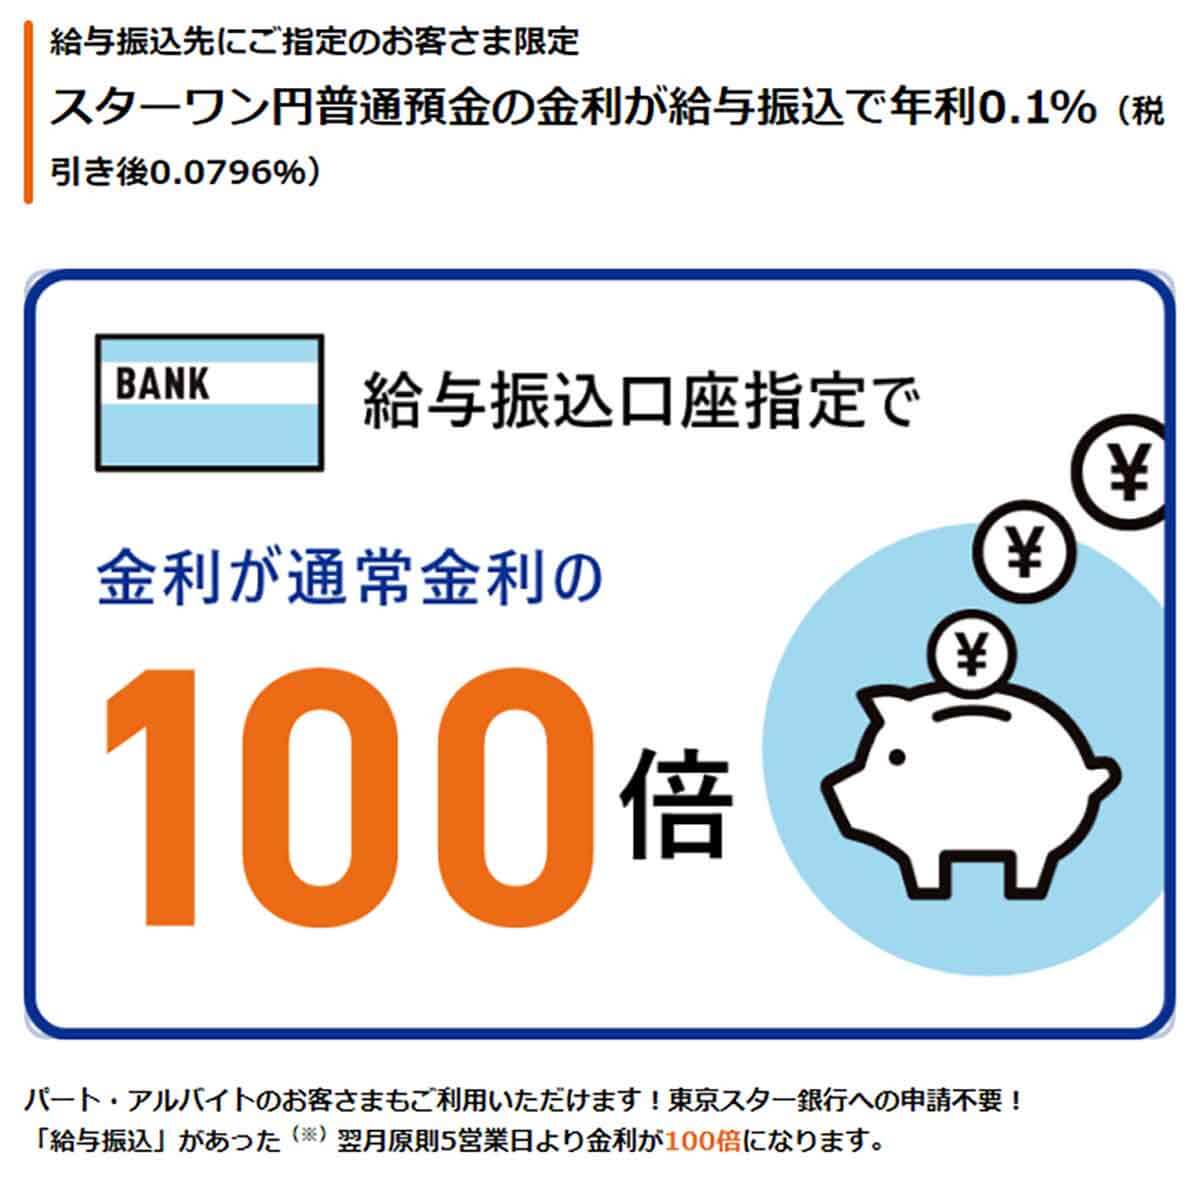 東京スター銀行「給与振込先にご指定のお客さま限定 スターワン円普通預金の金利が給与振込で年利0.1%」